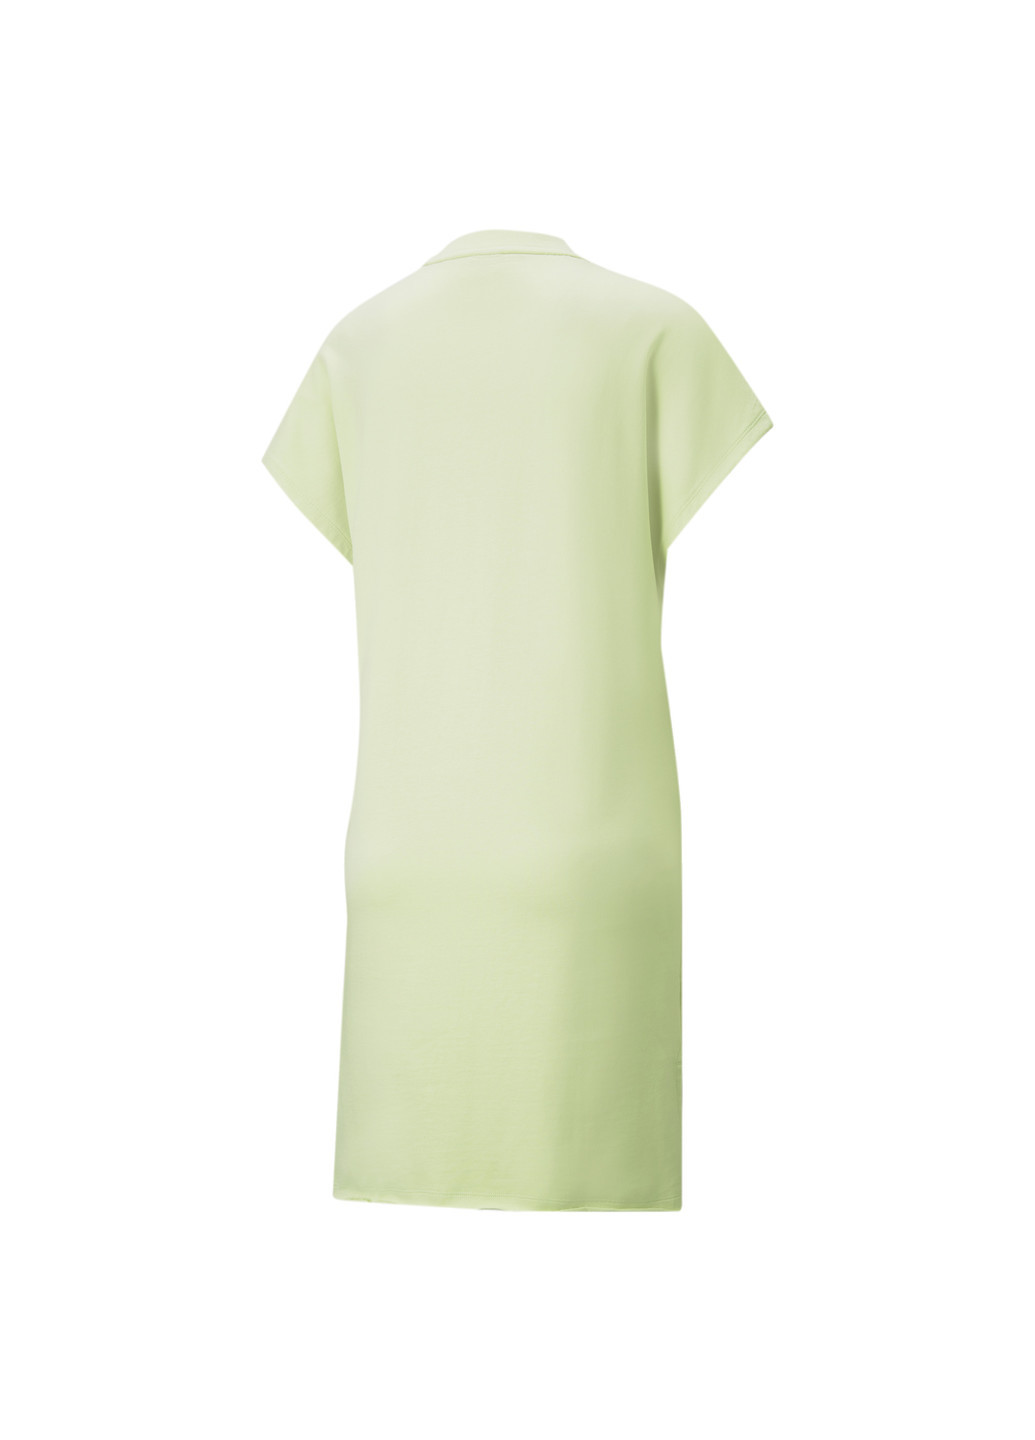 Сукня Summer Graphic Women's Dress Puma однотонна зелена спортивна бавовна, еластан